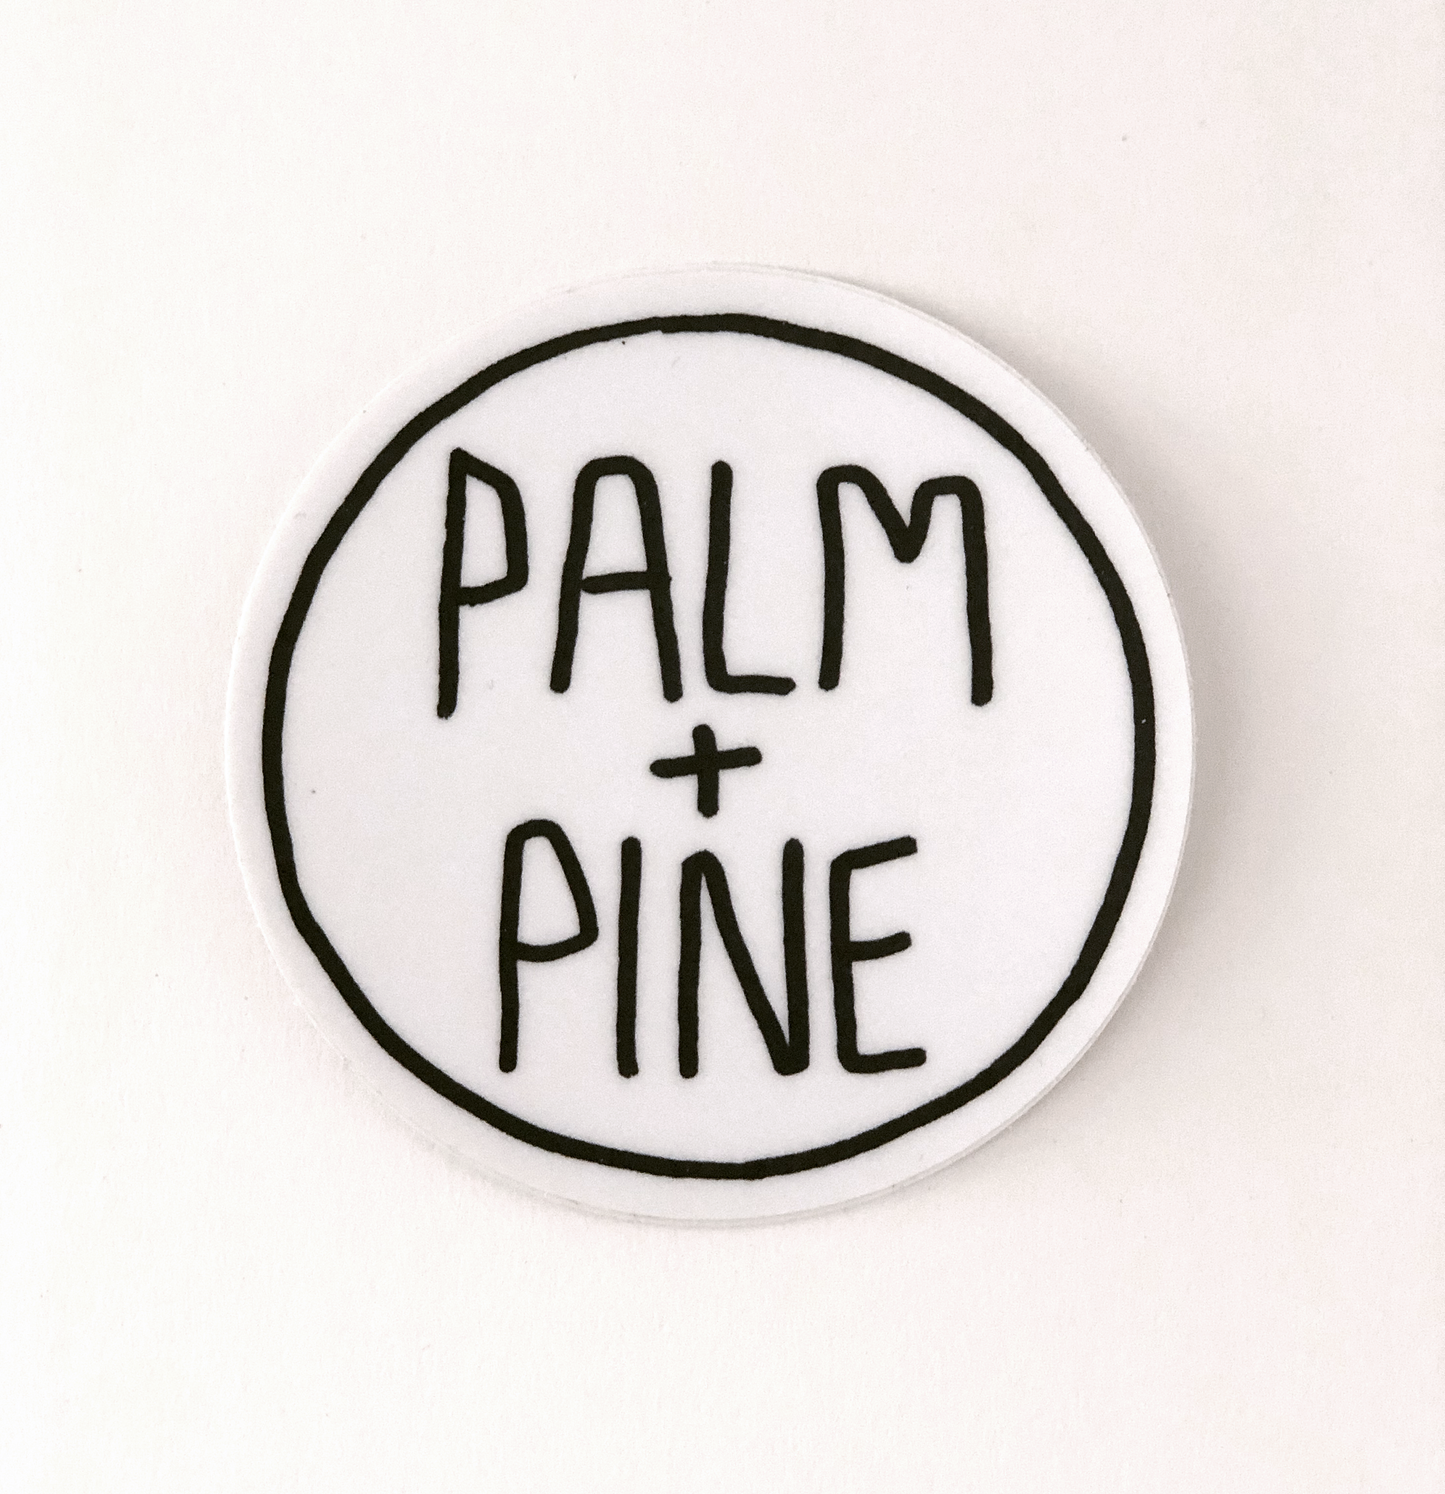 PALM + PINE LOGO STICKER (3" CIRCLE)